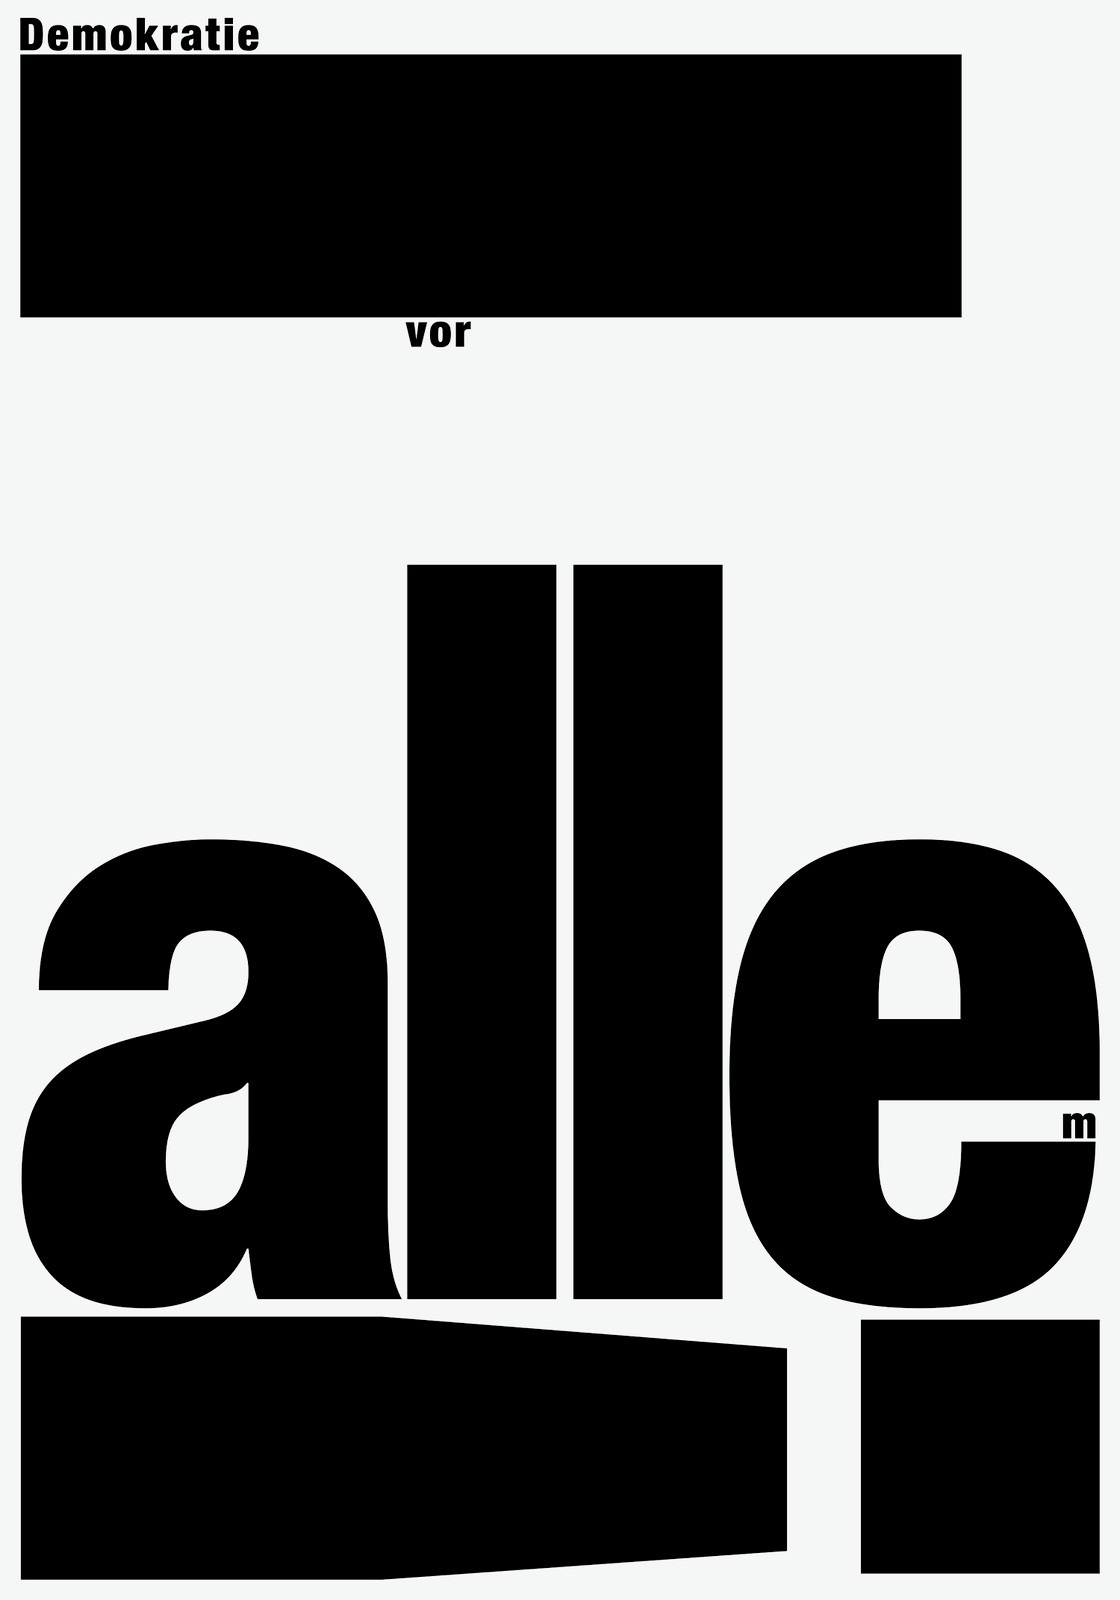 res eichenberger字体海报设计